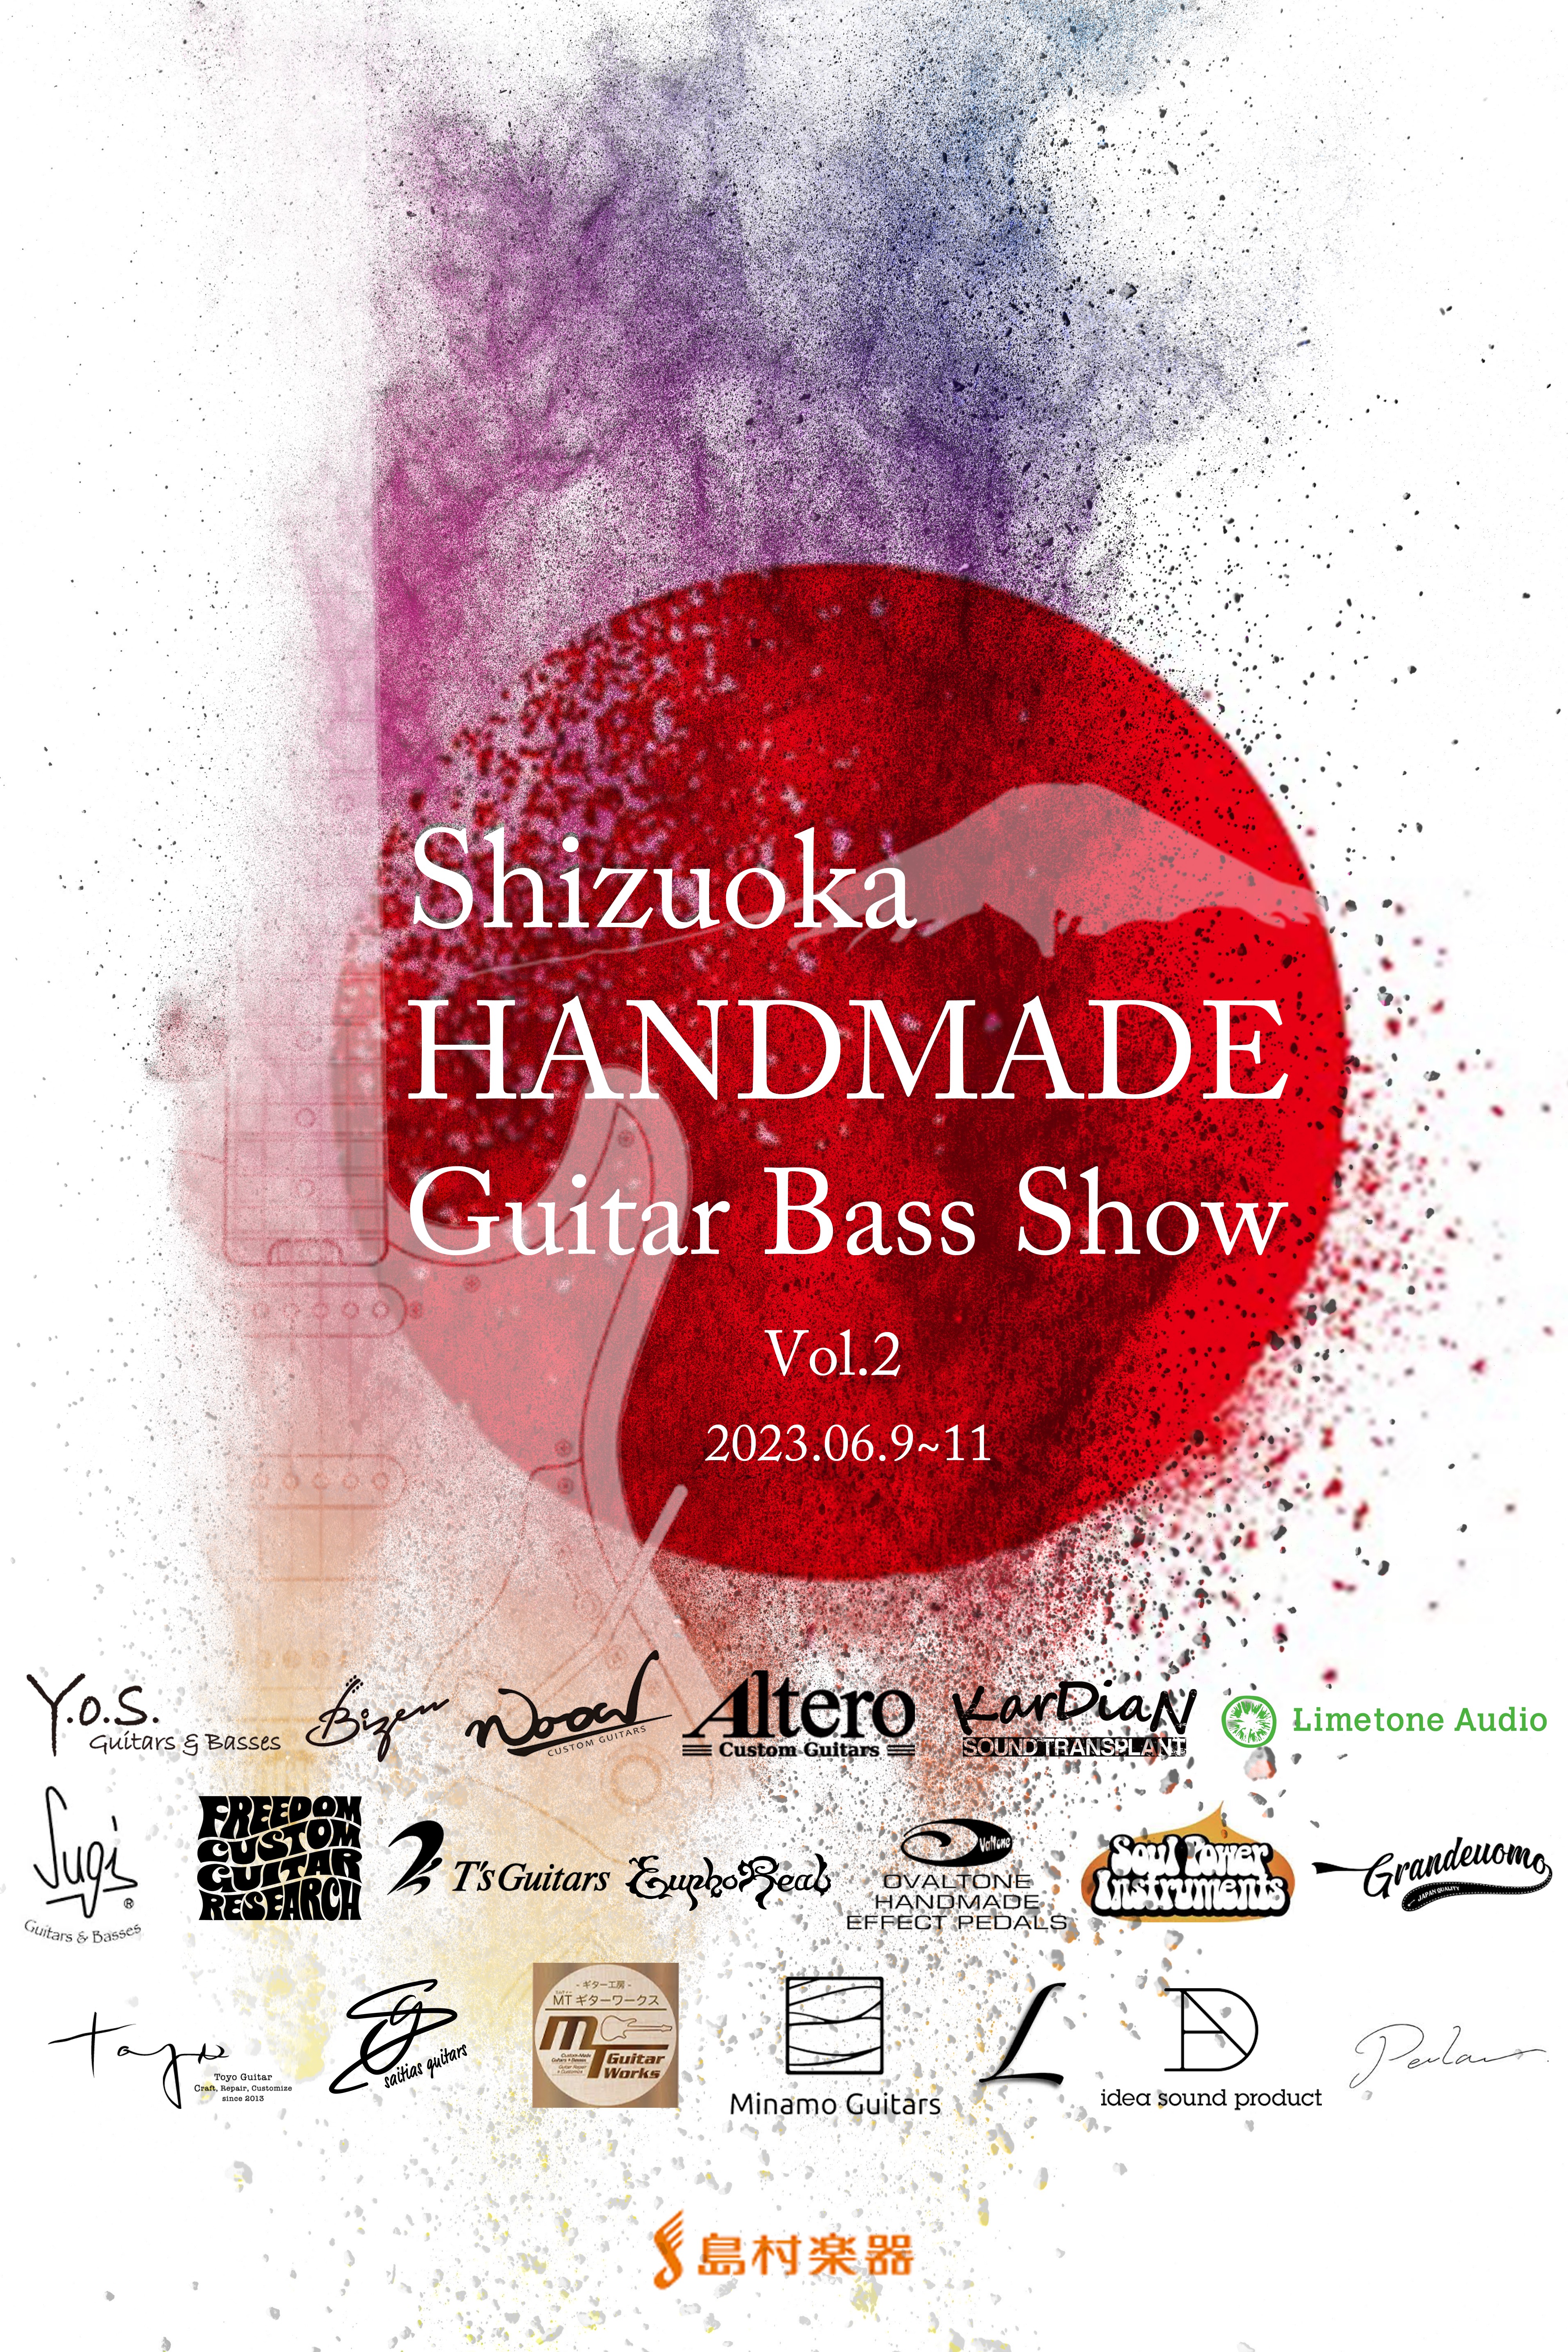 いつも、島村楽器をご利用頂き誠に有難うございます。静岡パルコ店 店長の平林です。2023年6月9日(金)～6月11日(日)の期間、静岡パルコ8階店内でSHIZUOKA Handmade Guitar Bass SHOW Vol.2を開催致します！国内有数のビルダーへ本イベントの為にオーダーしたプレミ […]